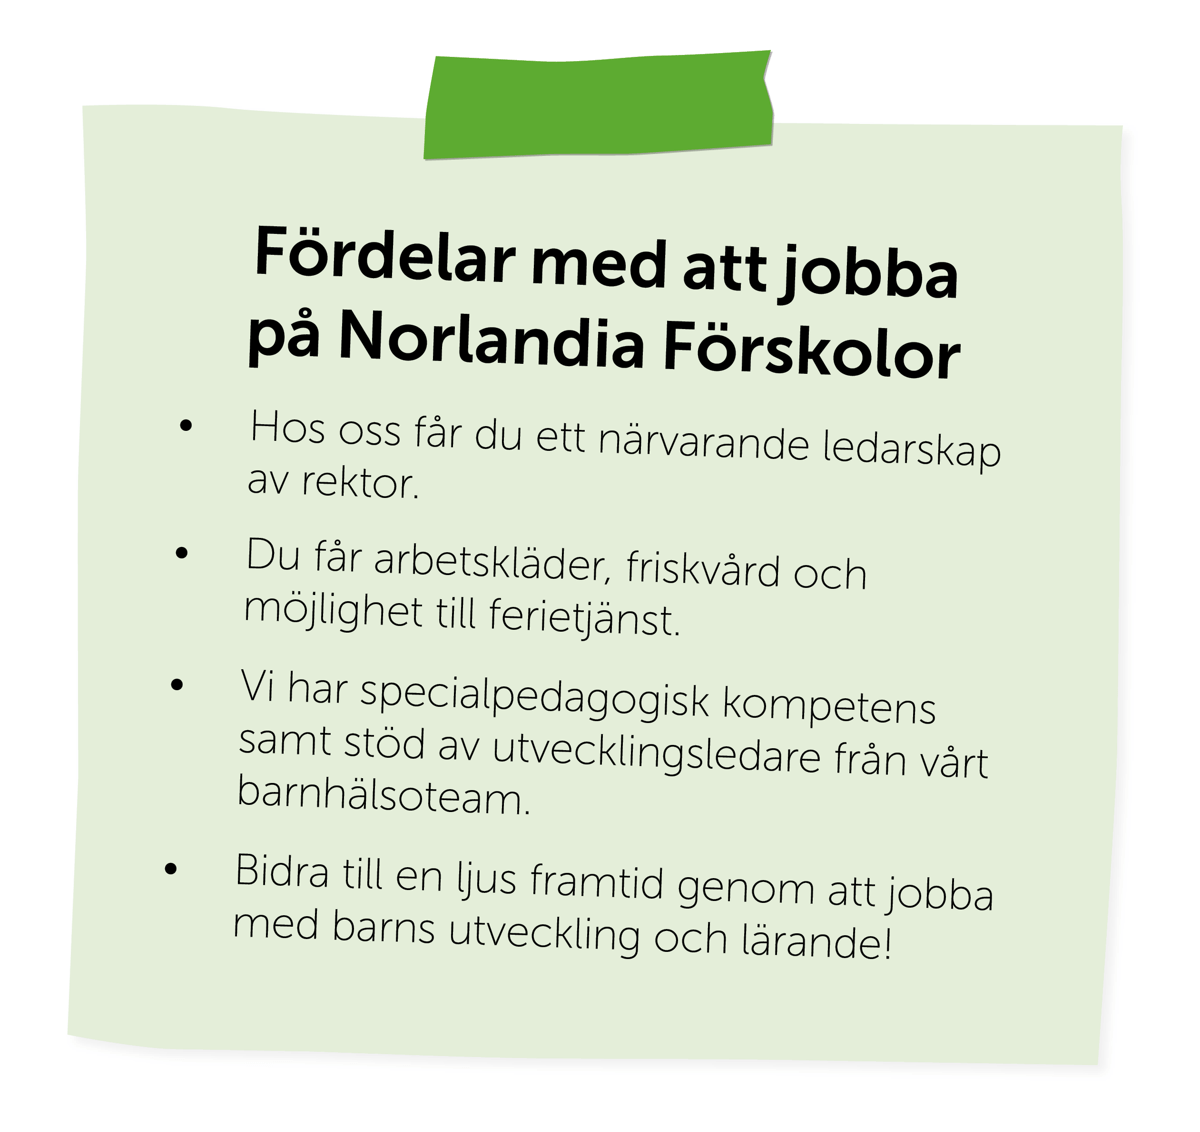 Post it - fördelar med att jobba på Norlandia Förskolor.png